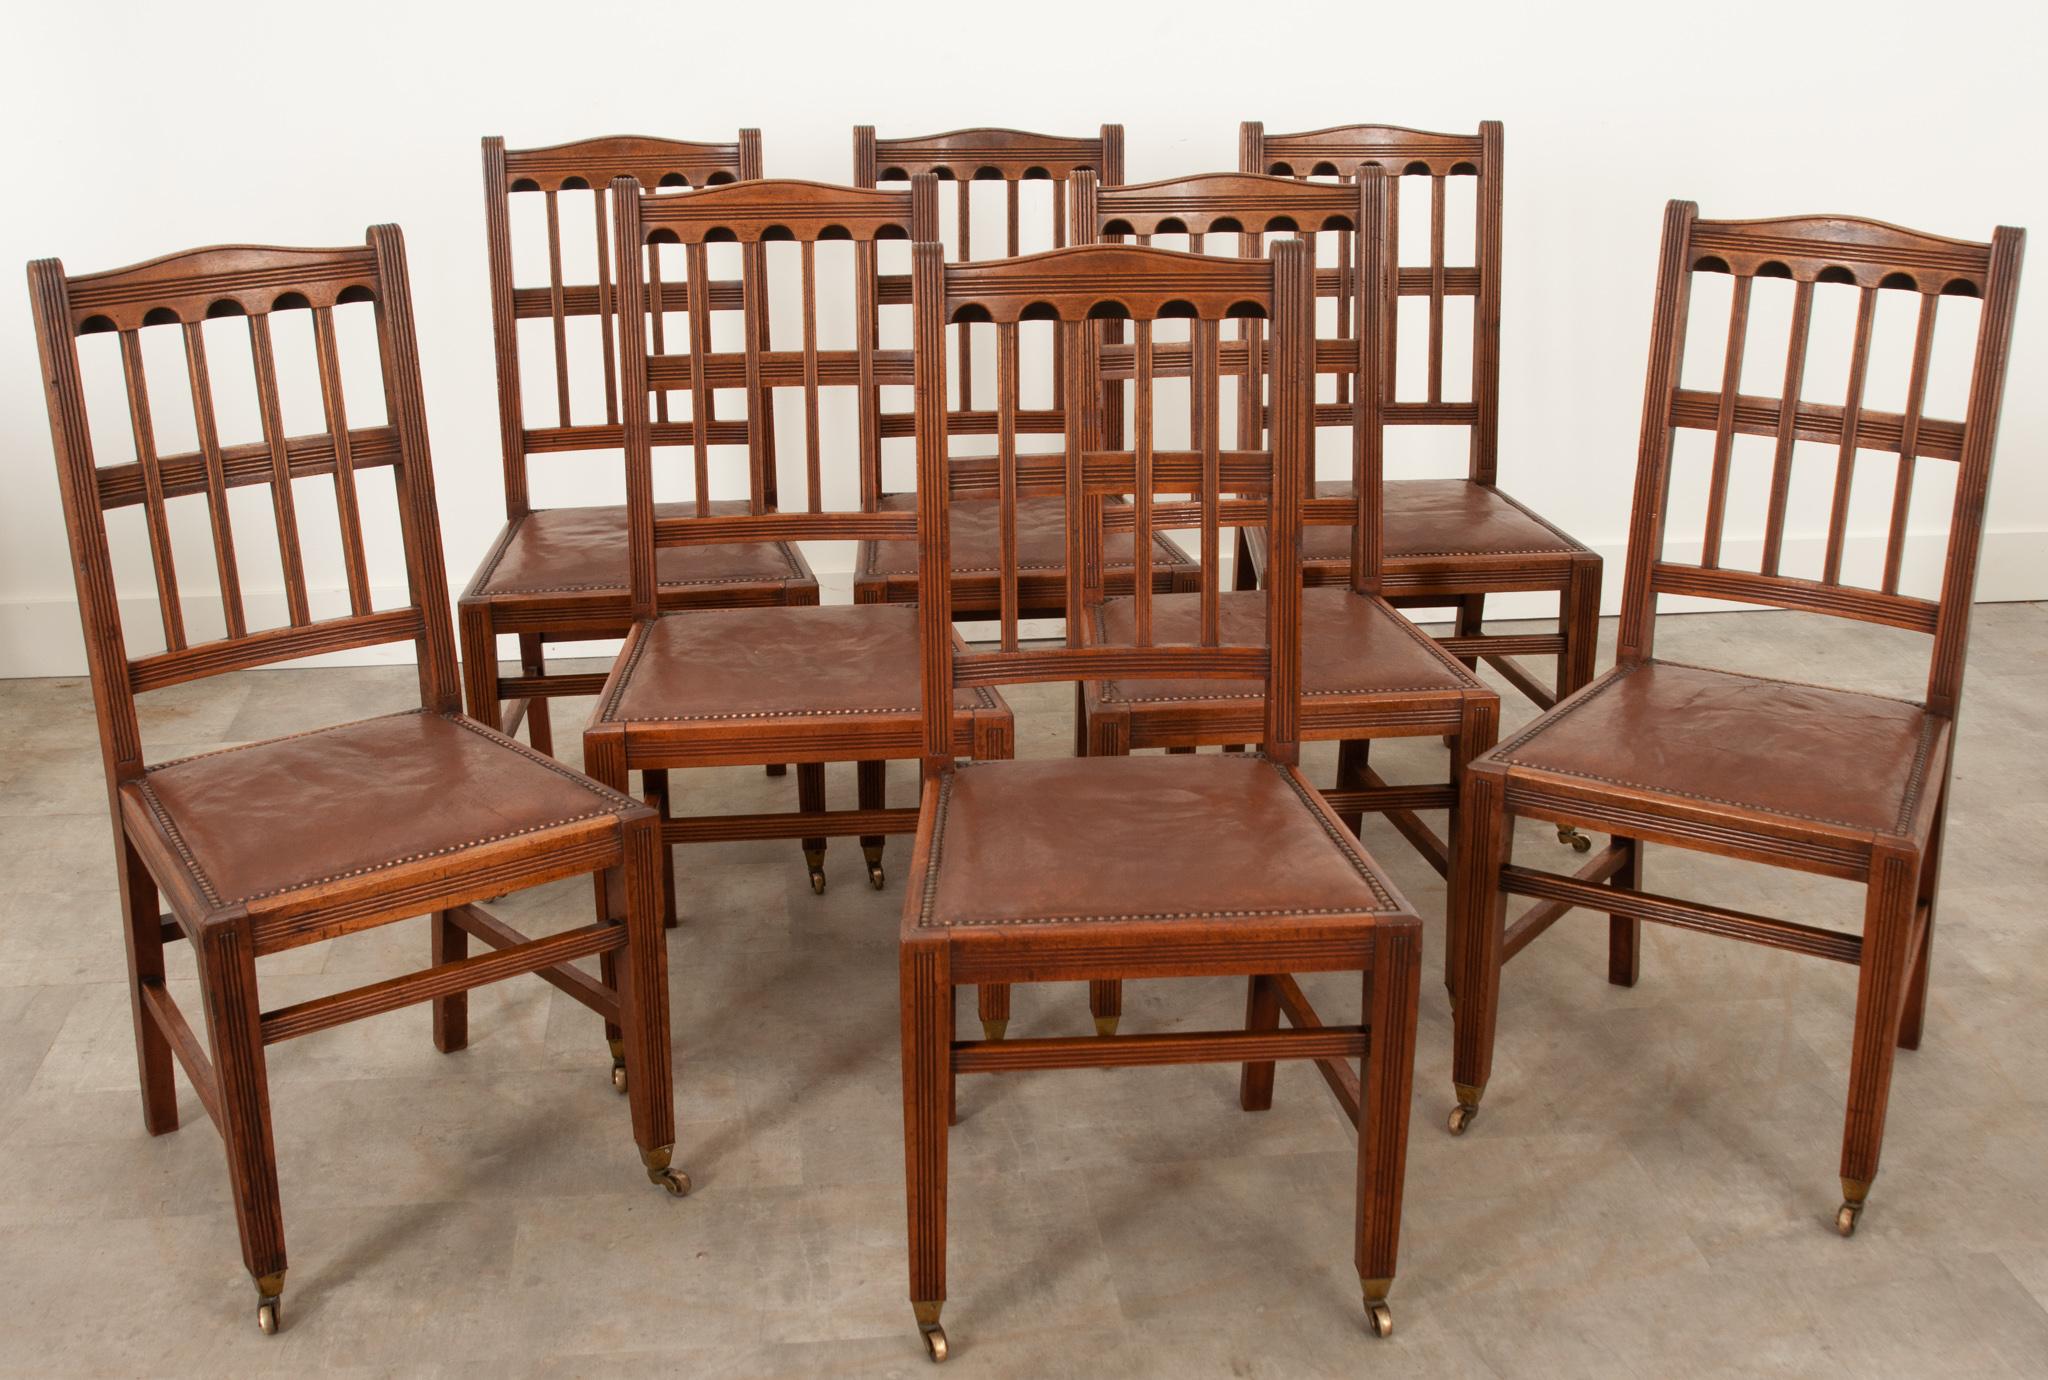 Ensemble de huit chaises de salle à manger anglaises de conception et d'état impressionnants datant des années 1860. Les sculptures géométriques sont conçues et réalisées avec soin. Les sièges en cuir usé avec garniture en tête de clou sont